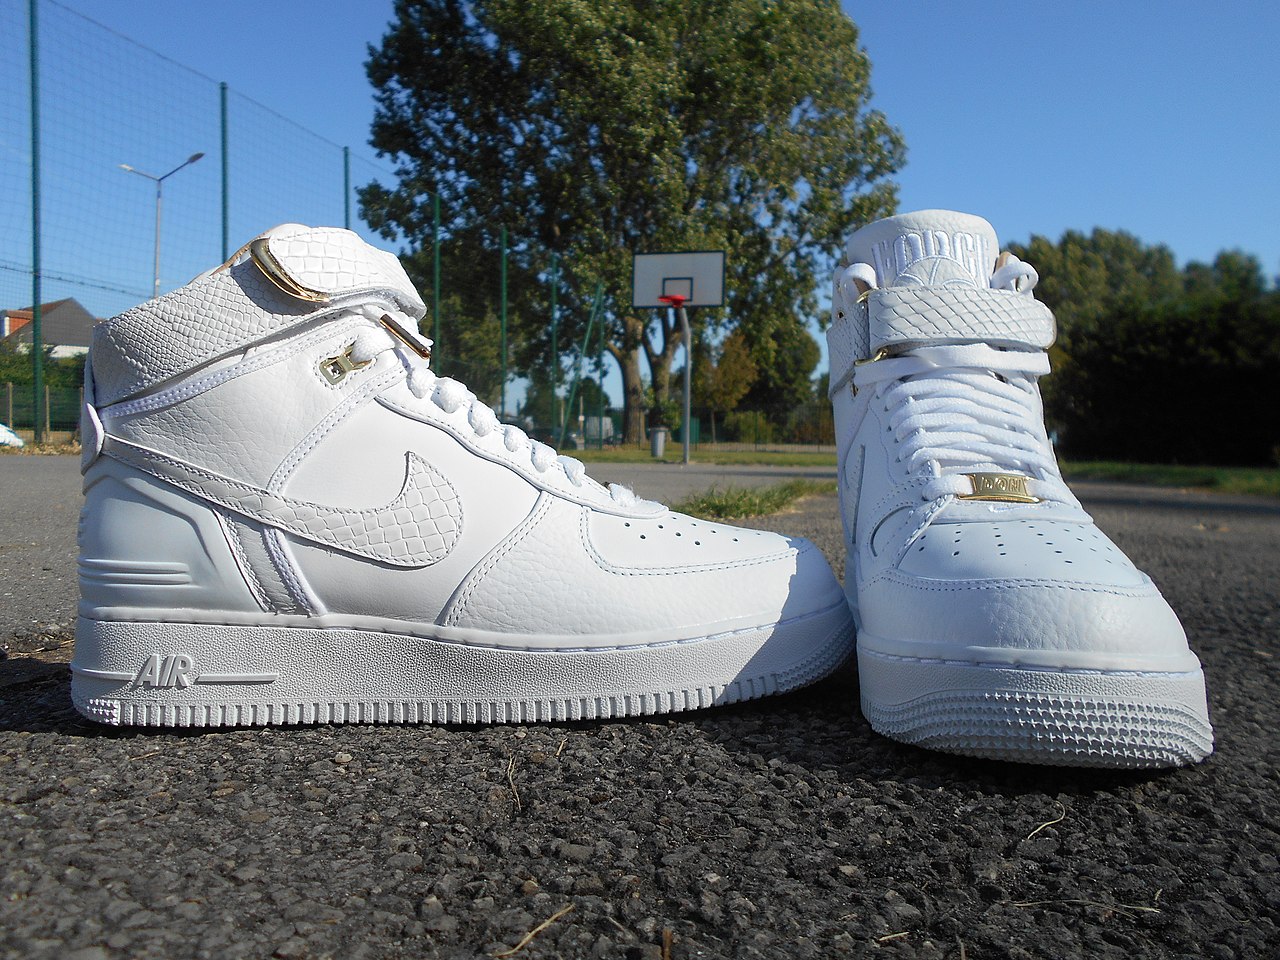 File:Nike air Force 1 white on white.jpg - Wikipedia